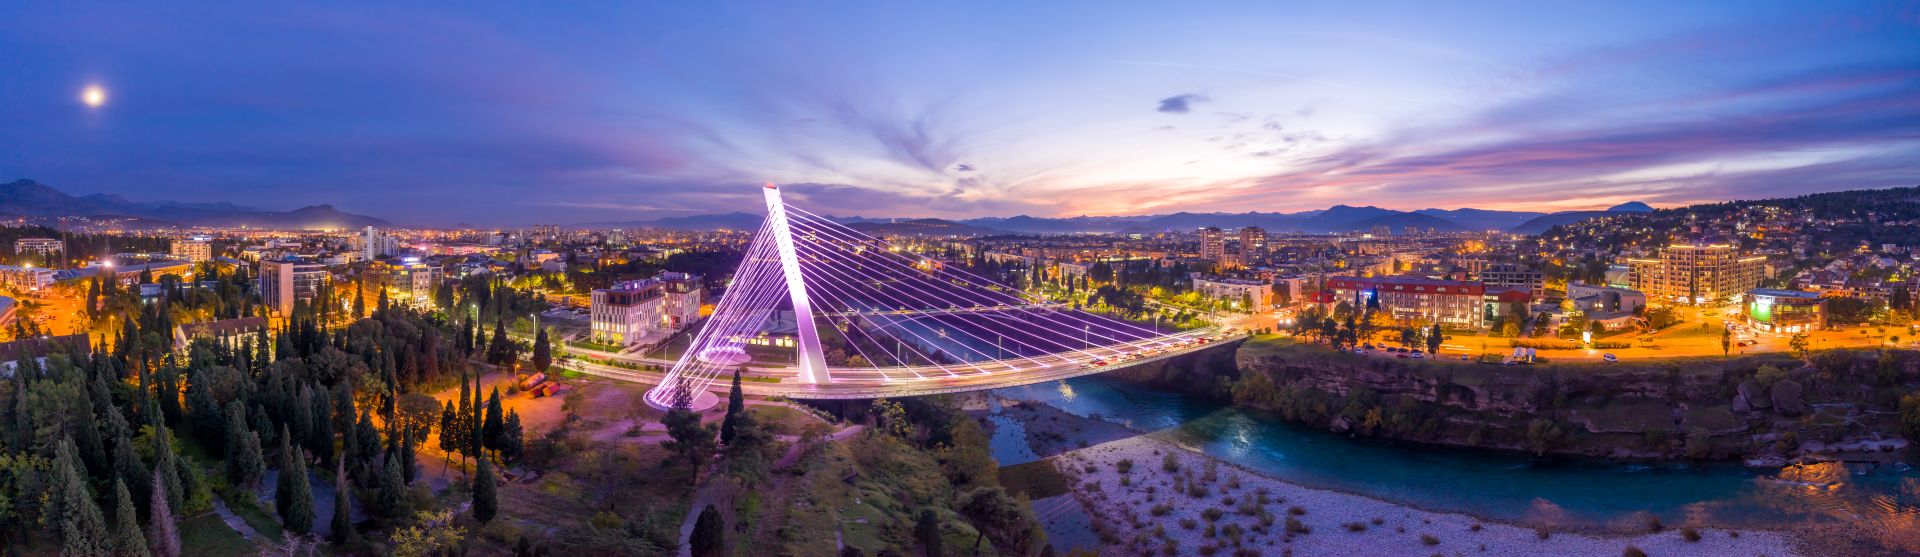 Освещенный мост тысячелетия через реку Морака